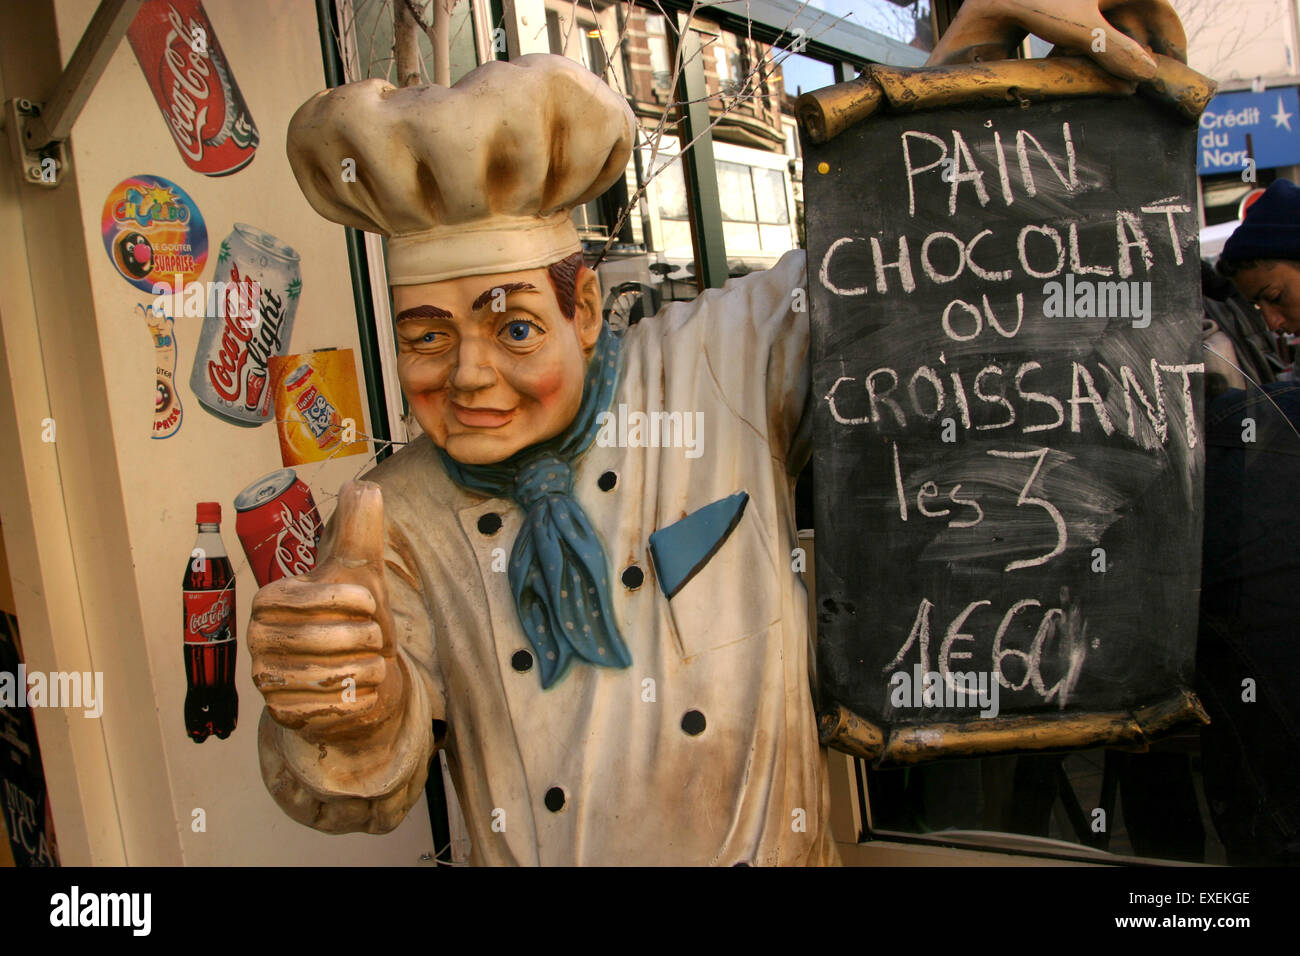 Ein Koch Schaufensterpuppe Werbung Pain au Chocolat und Croissants Gebäck  in einem Street Market in Lille, Frankreich Stockfotografie - Alamy